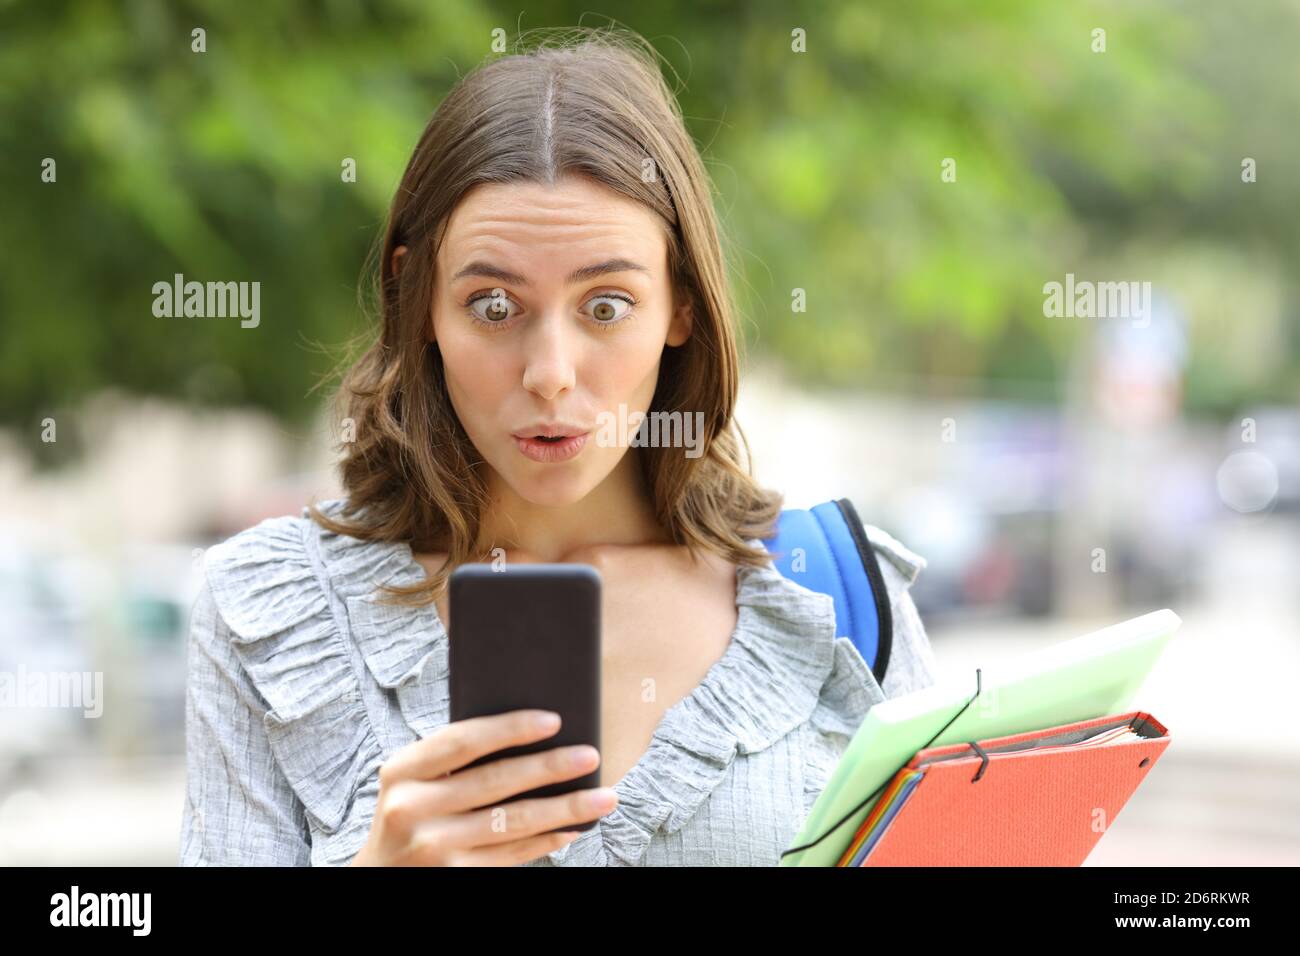 Vista frontale ritratto di uno studente sorpreso che controlla il telefono cellulare in strada Foto Stock